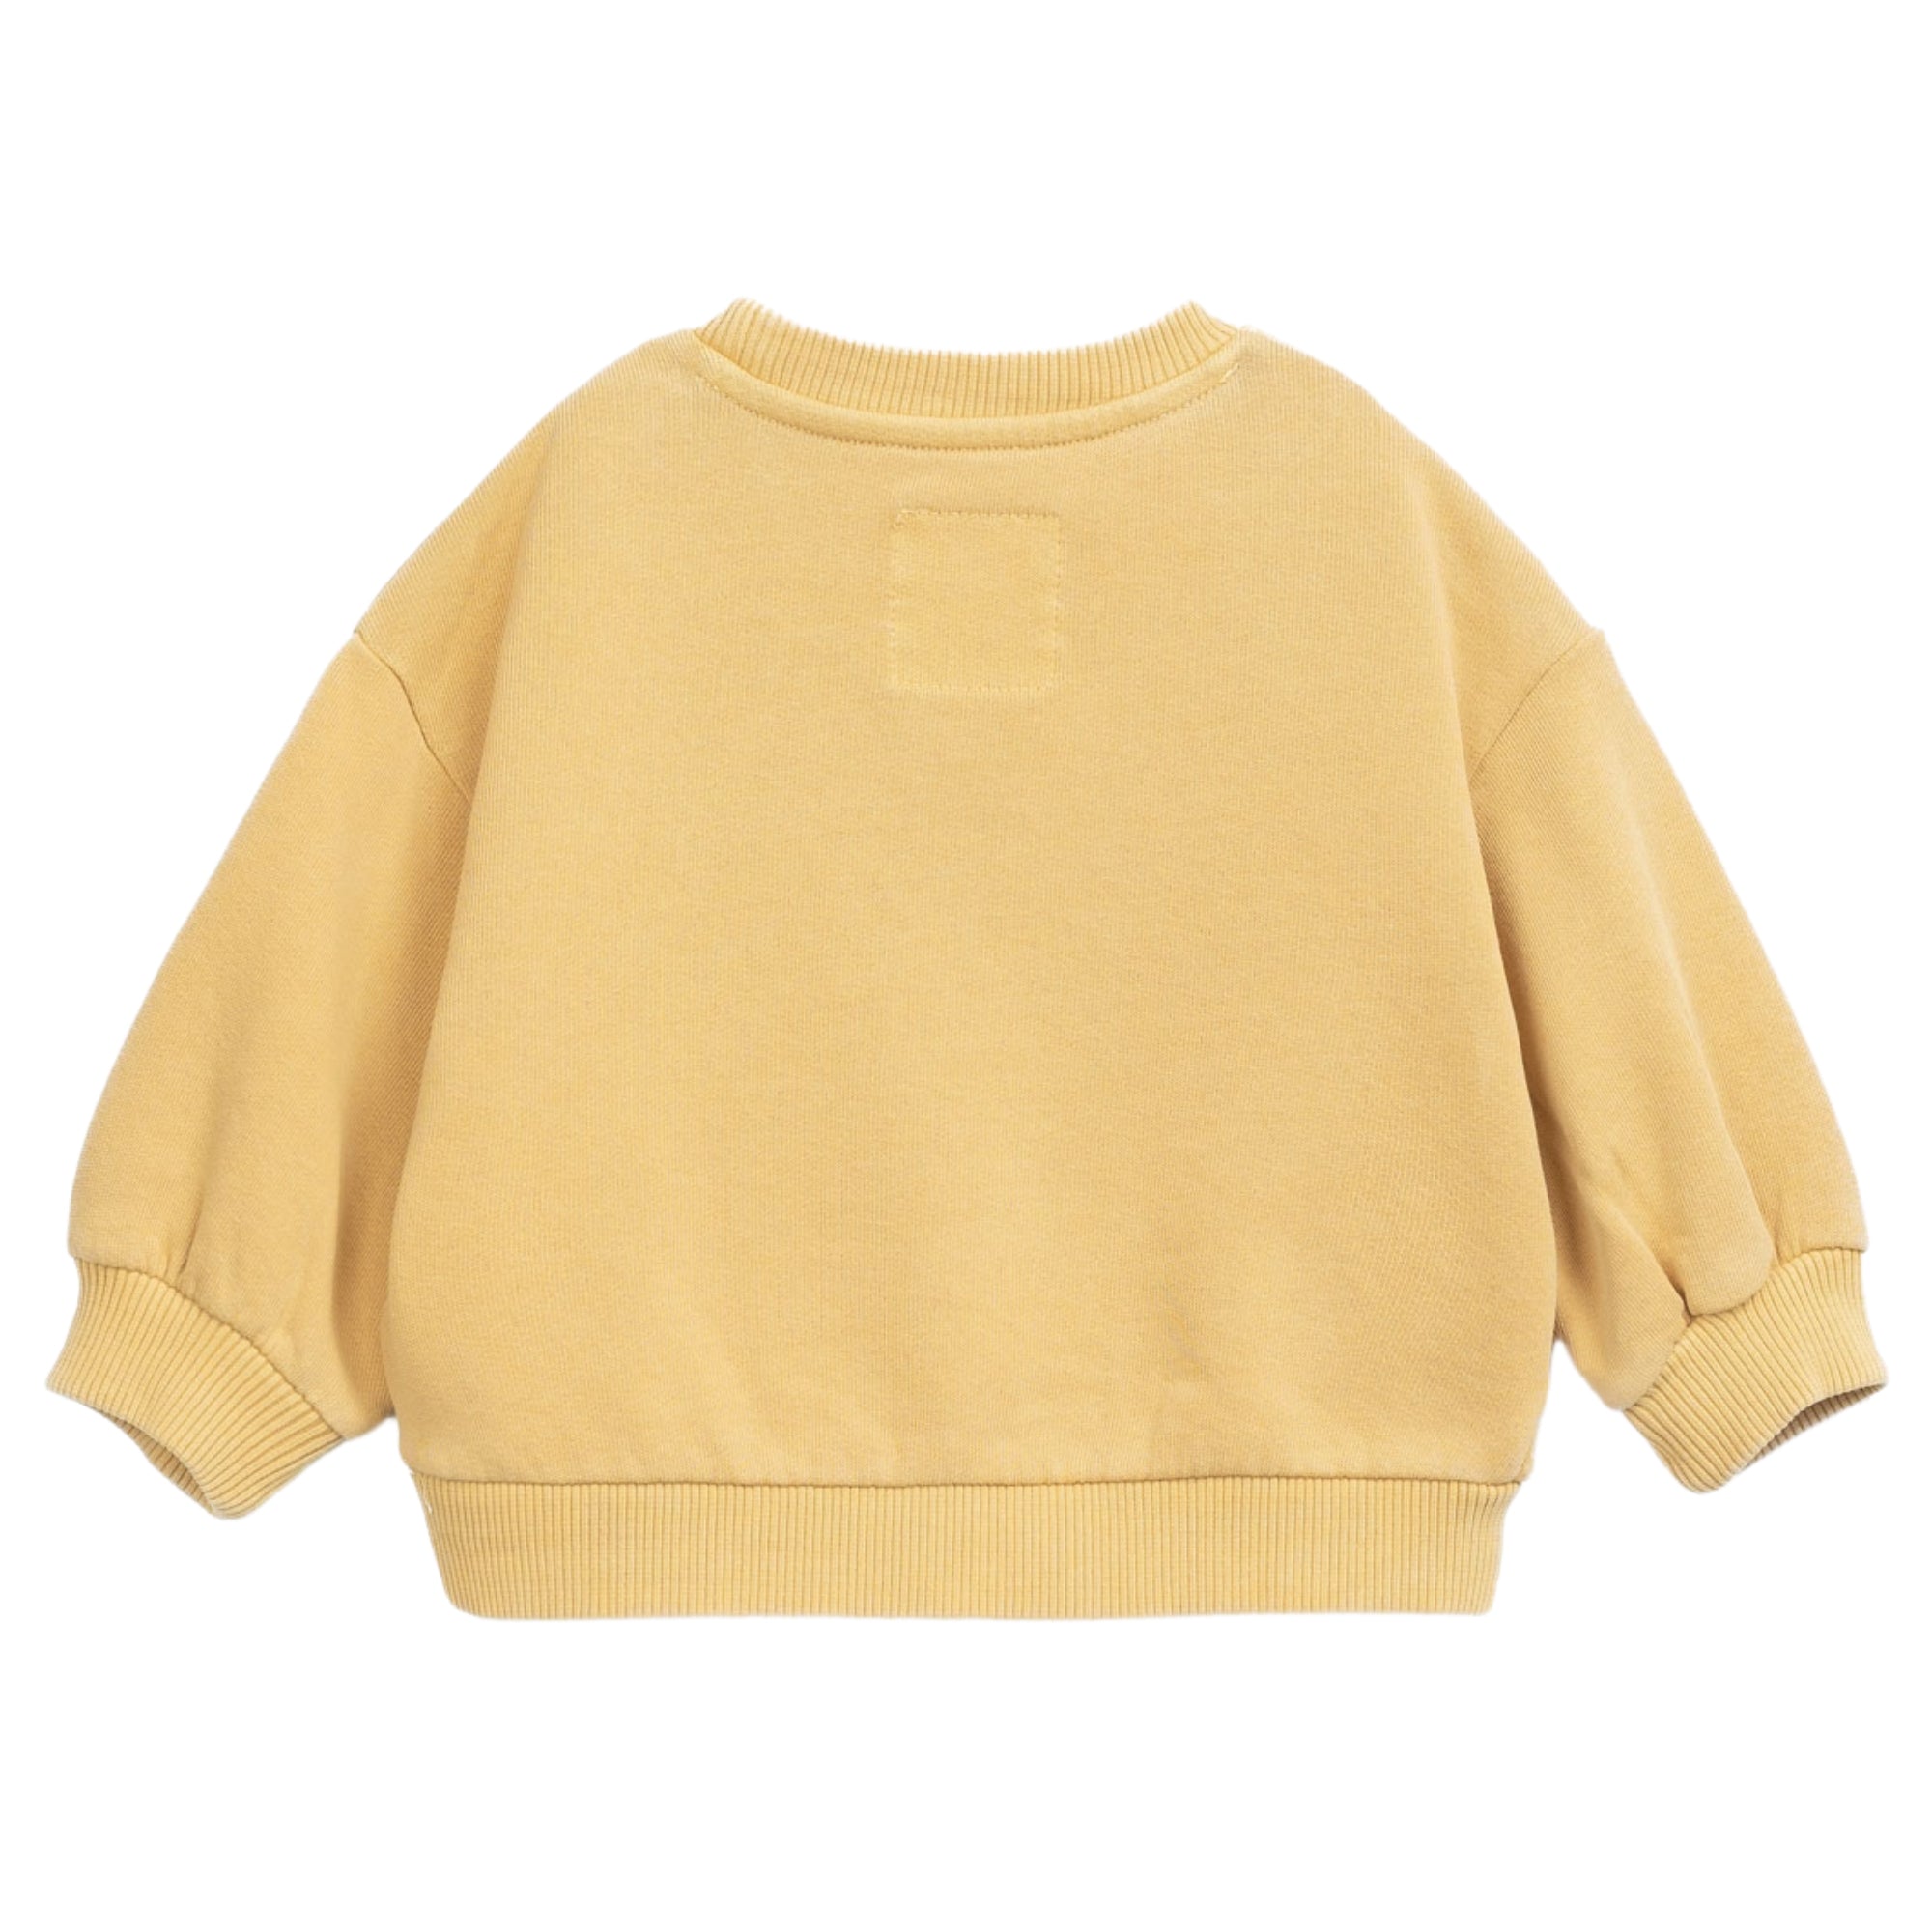 maglione-in-felpa-colore-giallo-manica-lunga-e-collo-rotondo-dietro